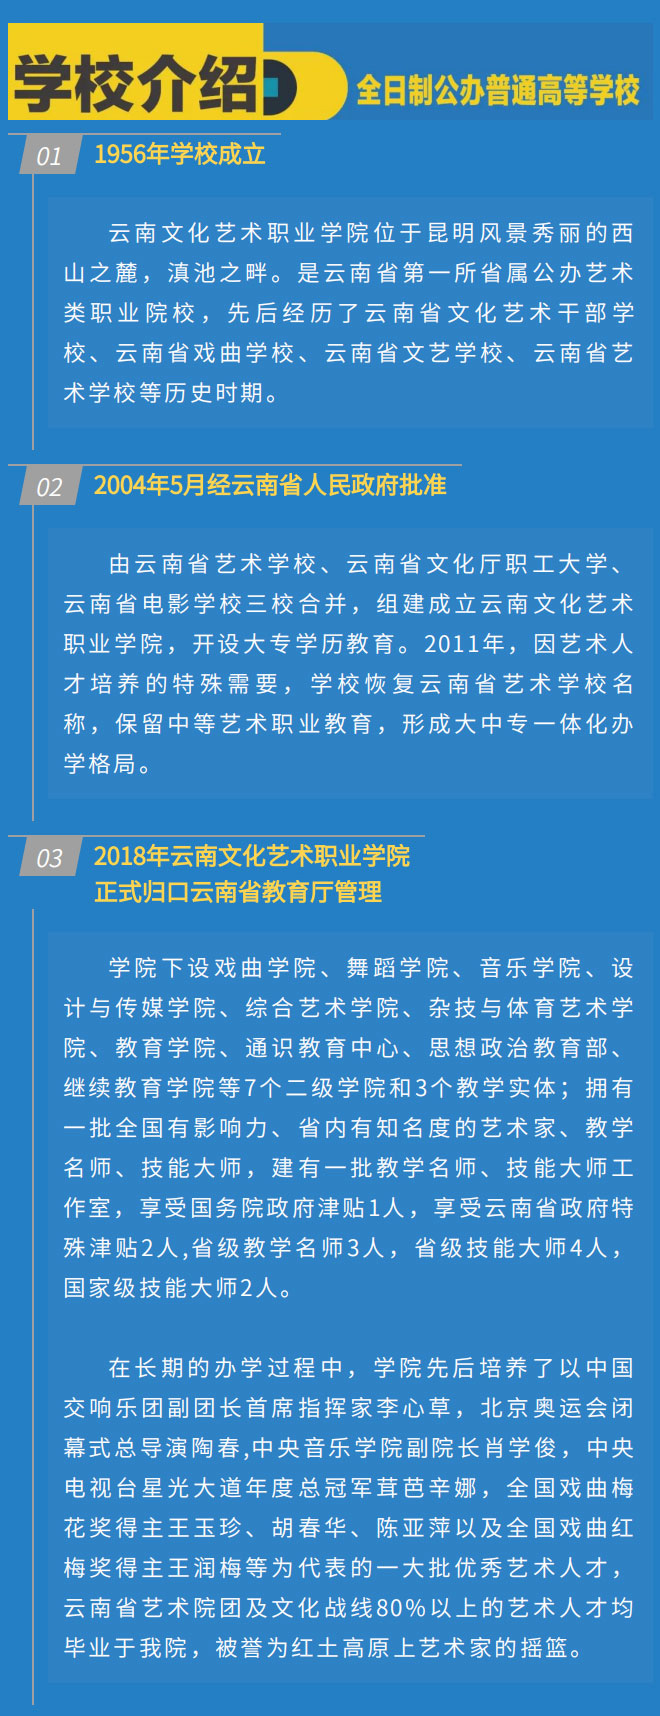 云南文化艺术职业学院2021年招生简章